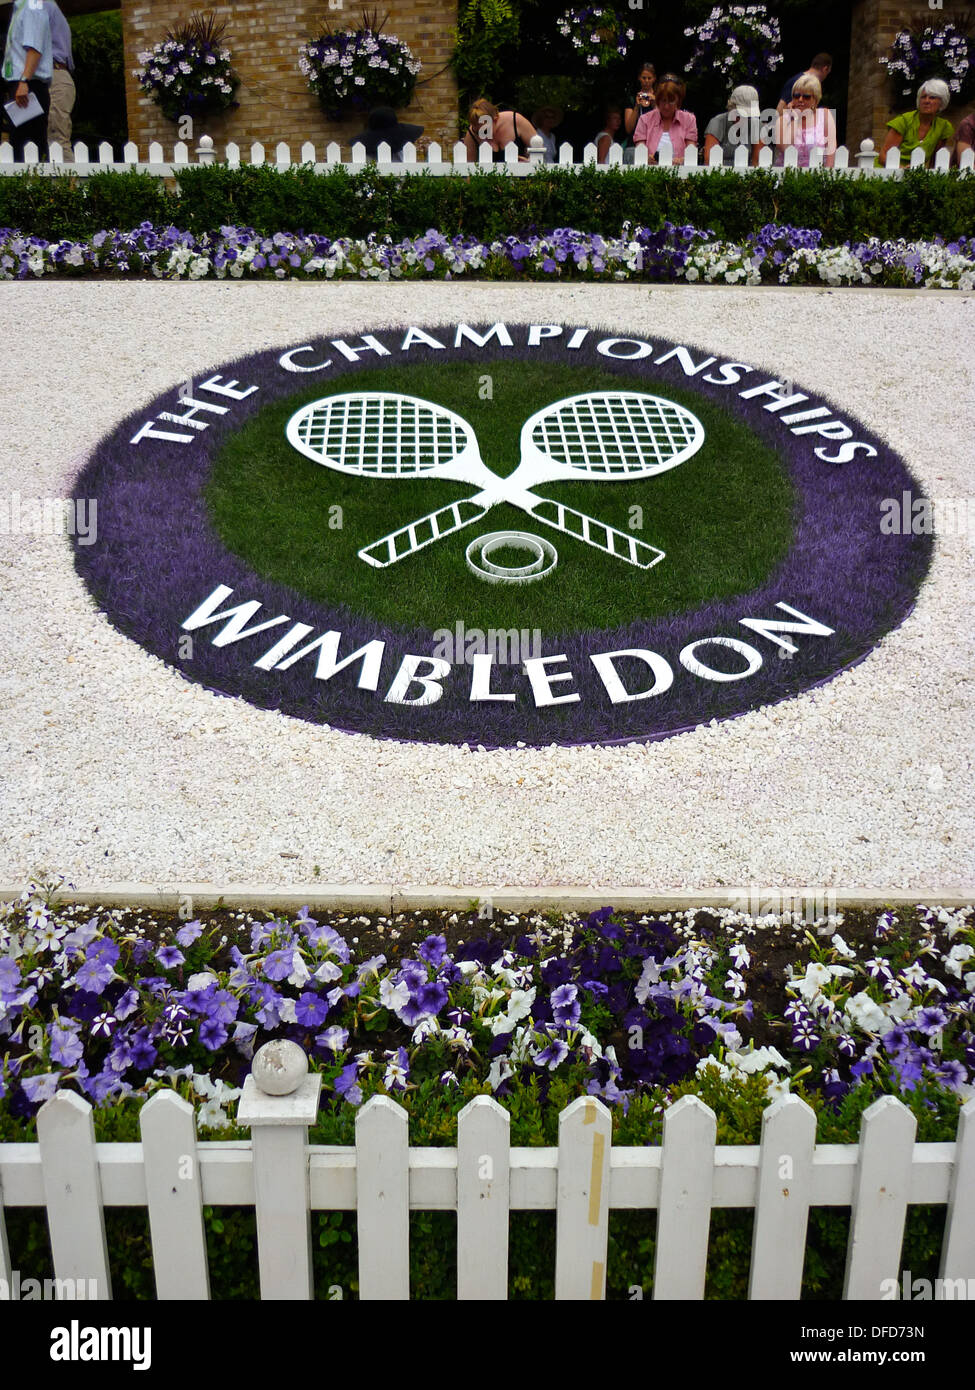 Composizione floreale in campionati di Wimbledon Foto Stock